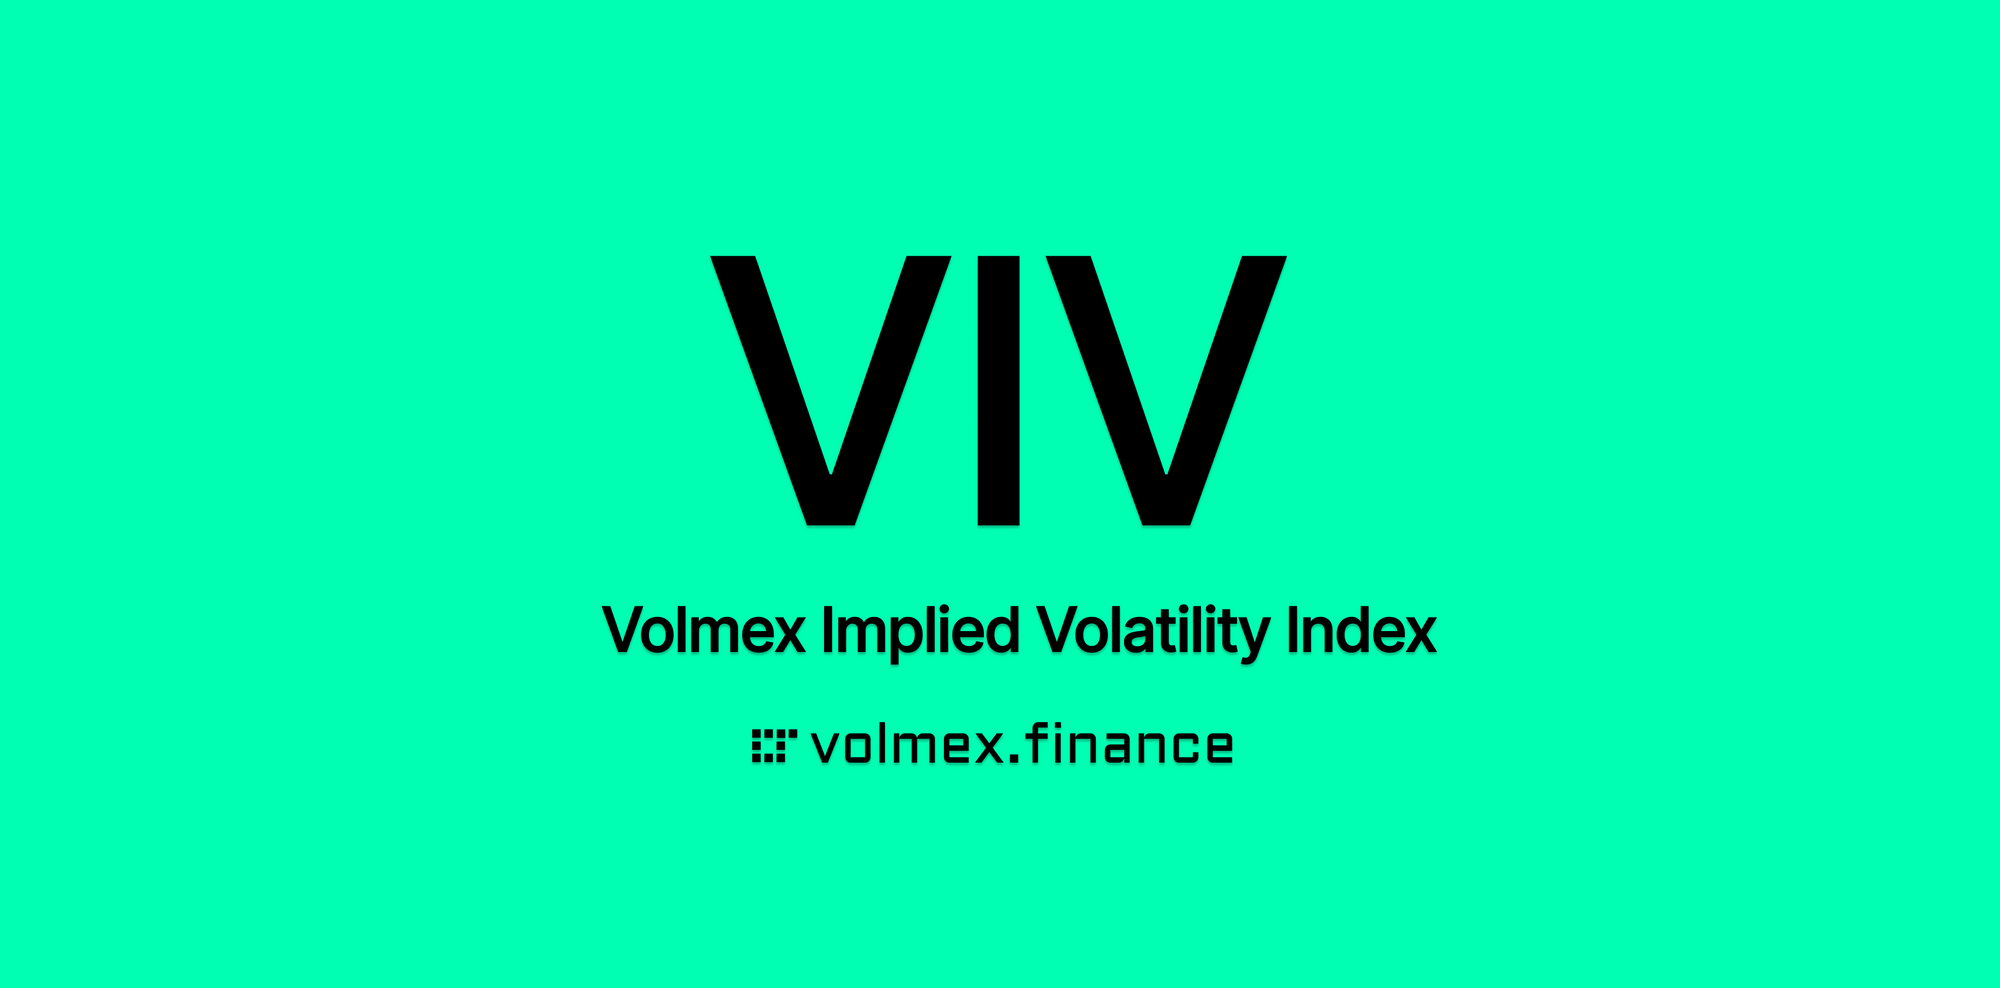 Introducing VIV (Volmex Volatility Index)